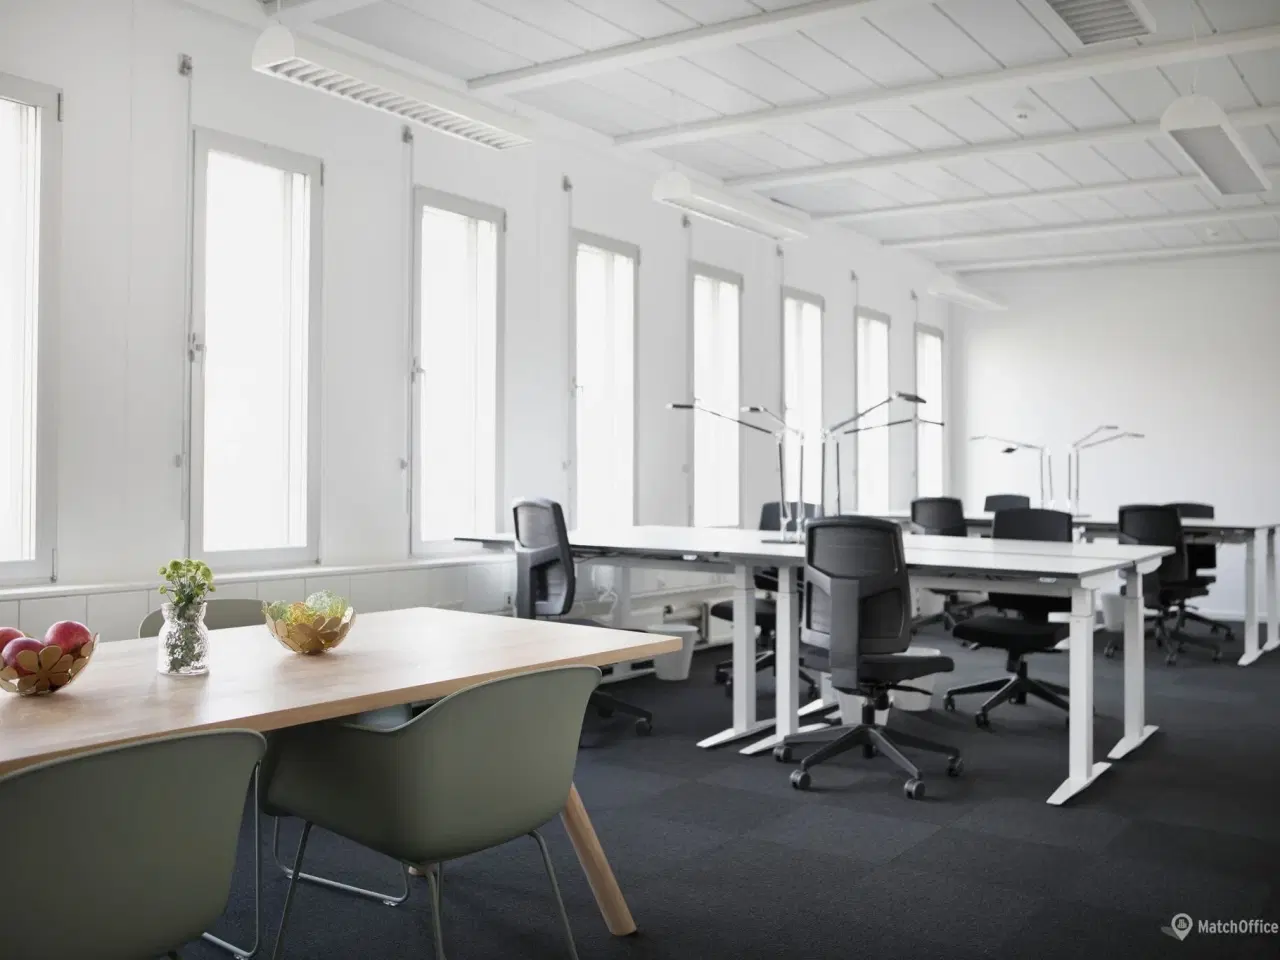 Billede 4 - Billigt kontor i Danmarks svar på Silicon Valley?